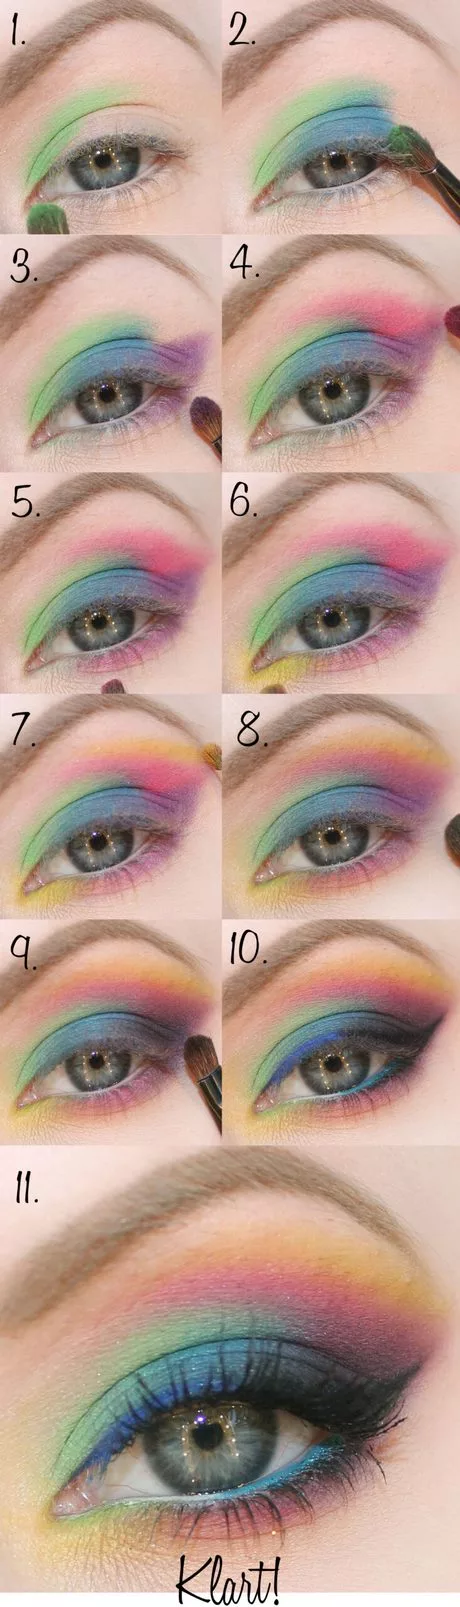 colorful-eye-makeup-tutorial-09_12-4 Kleurrijke oog make-up tutorial